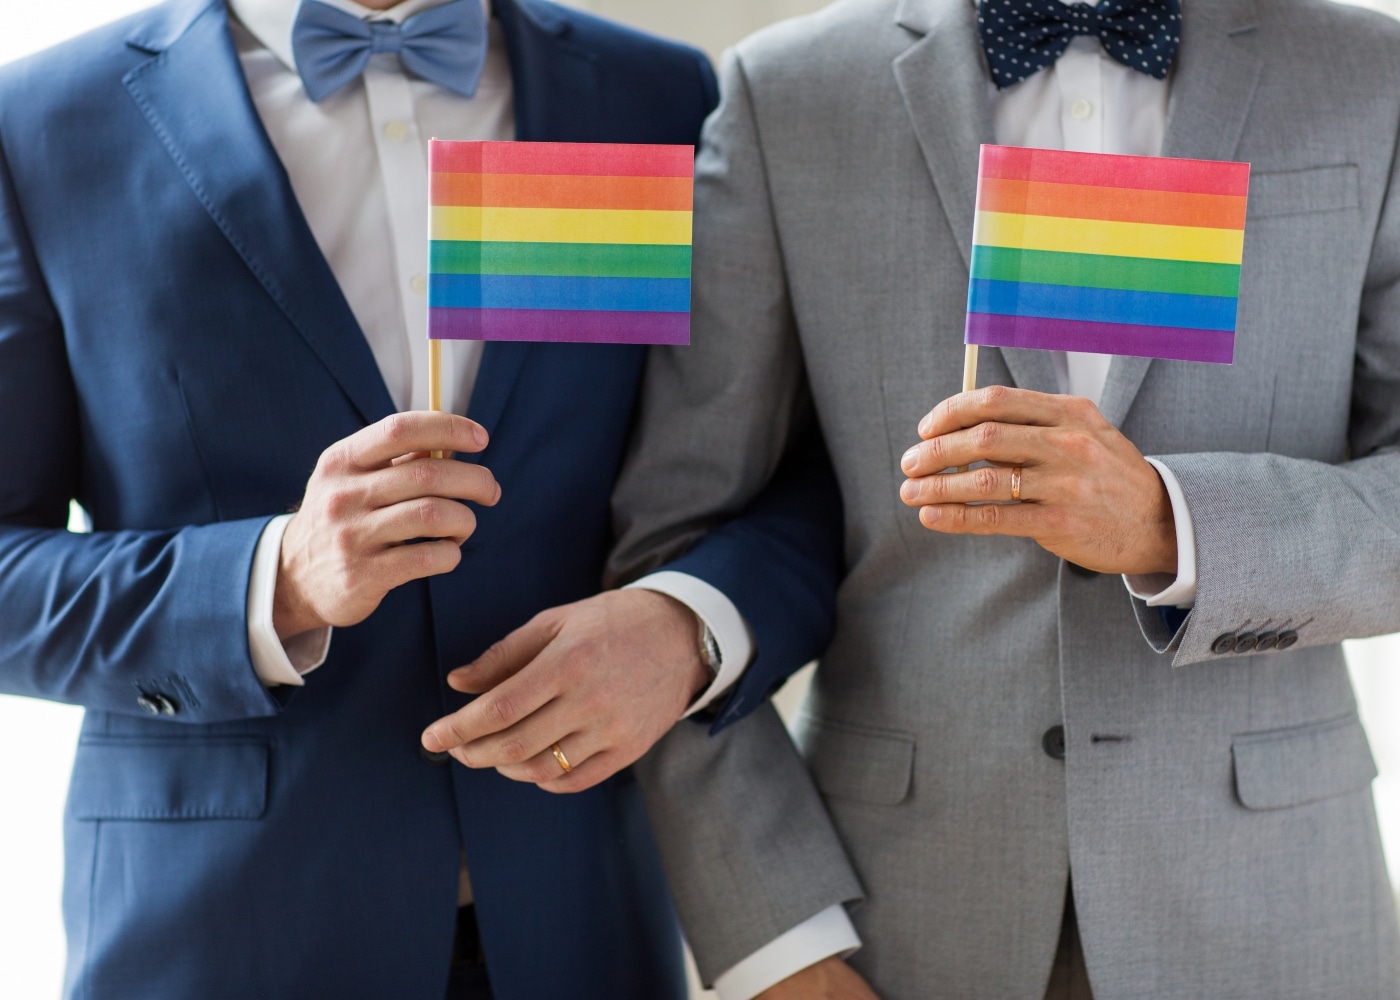 Residencia matrimonial: ¿Qué pasa con las parejas homosexuales?